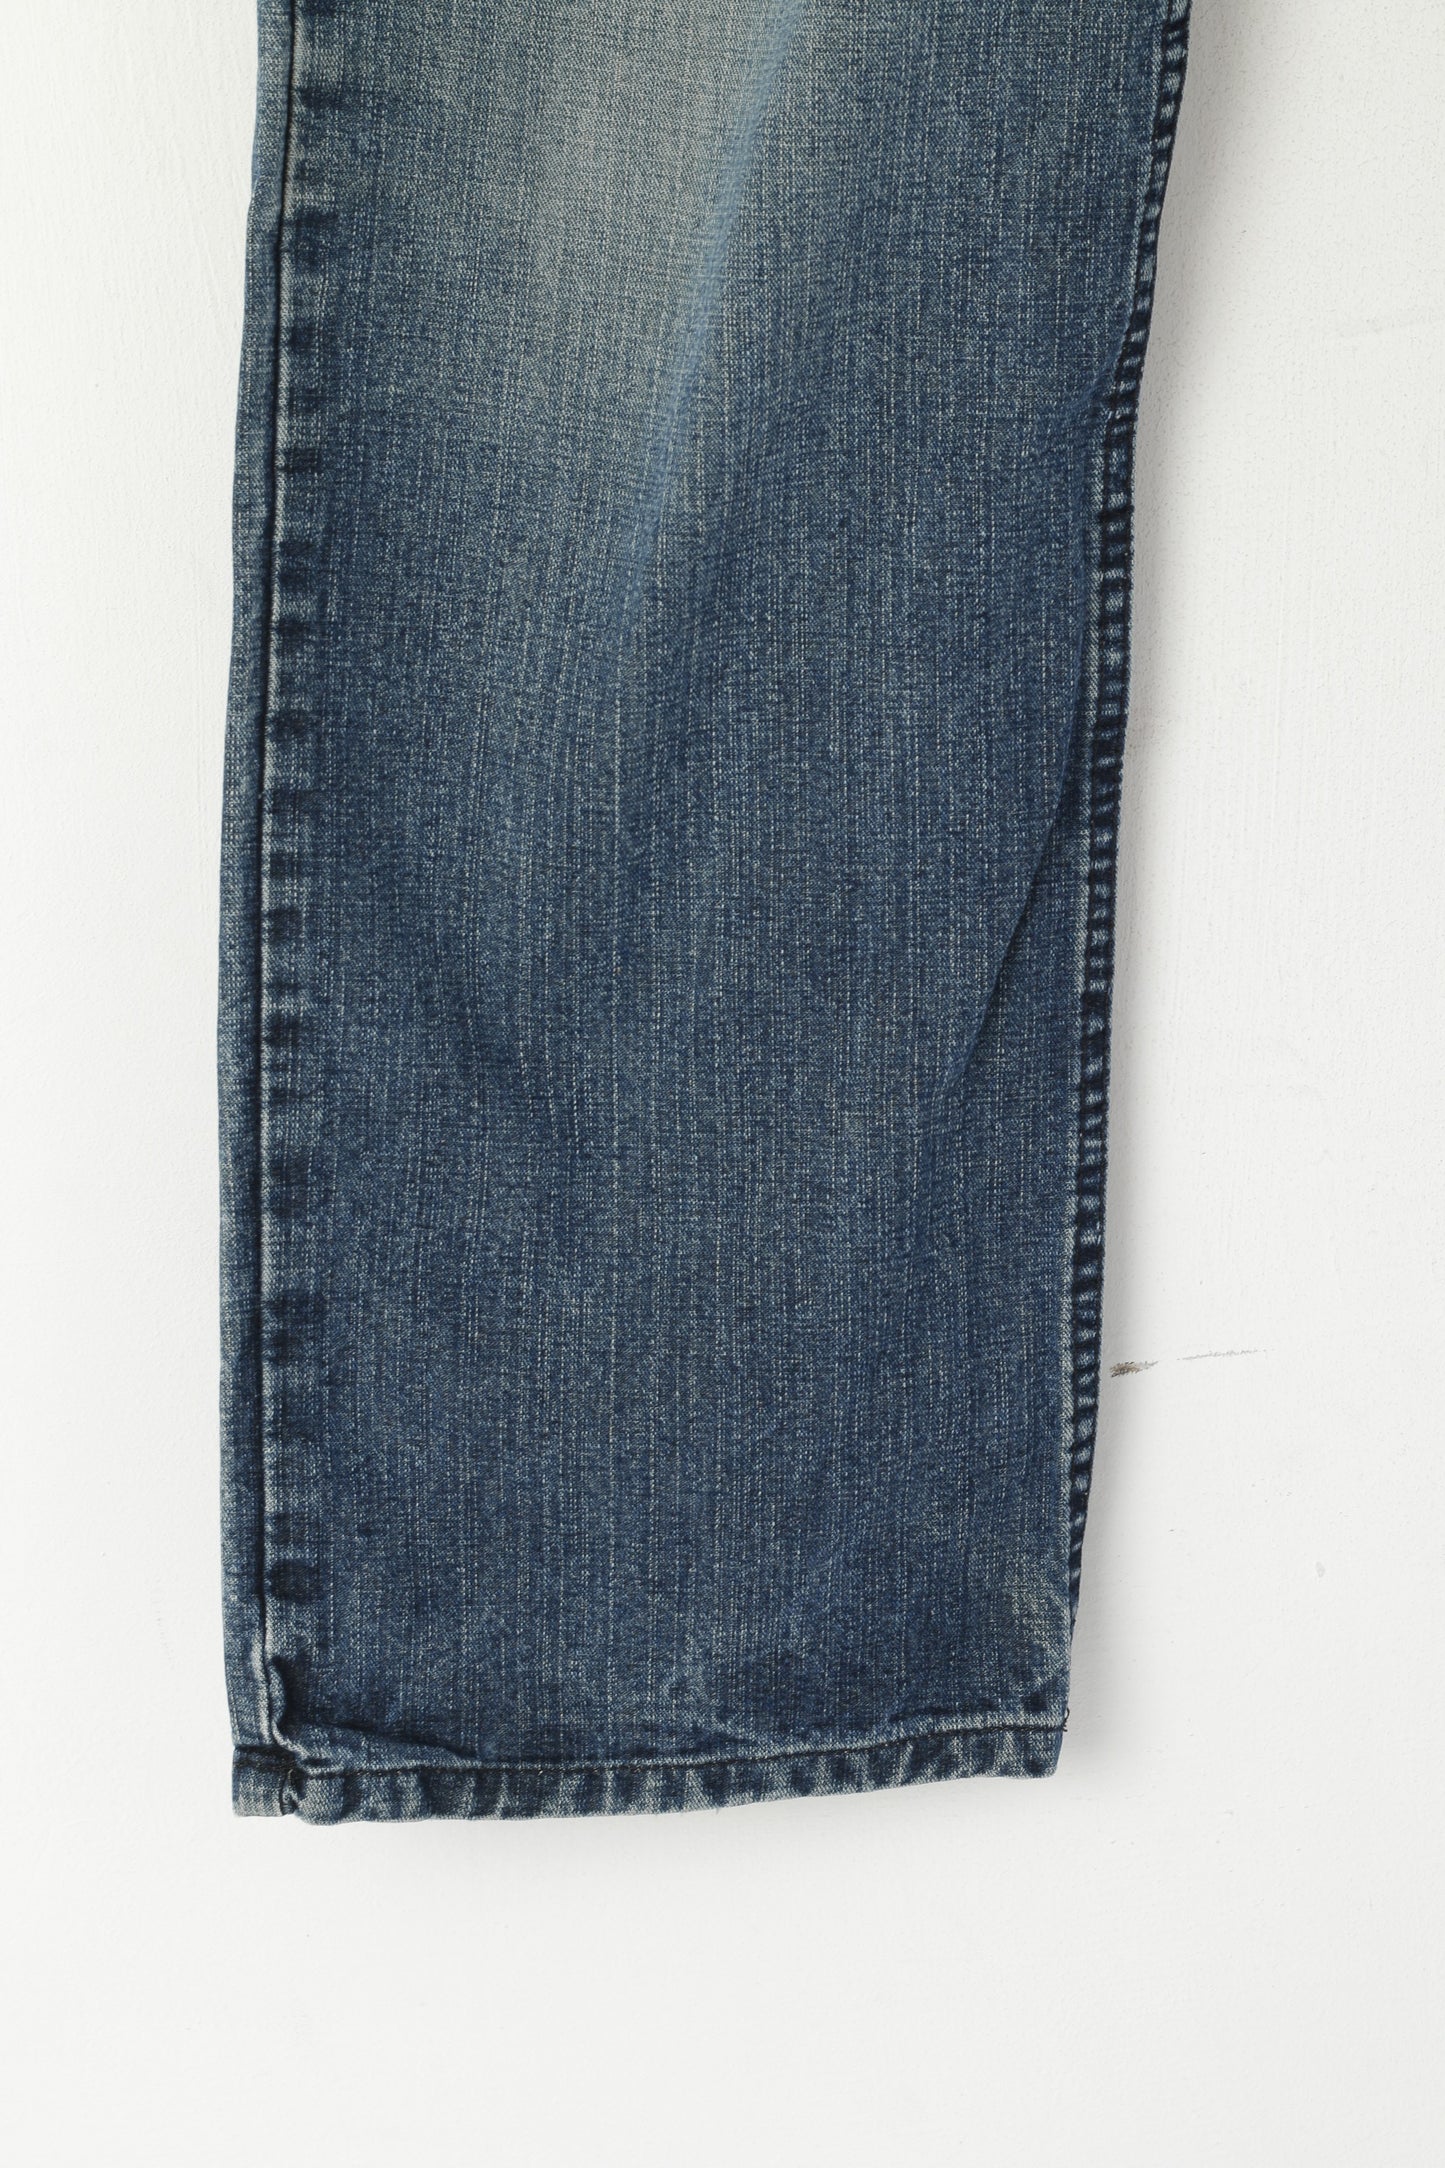 Armani Exchange Uomo 32 Jeans Pantaloni Navy Cotton AX Easy Fit Pantaloni dritti